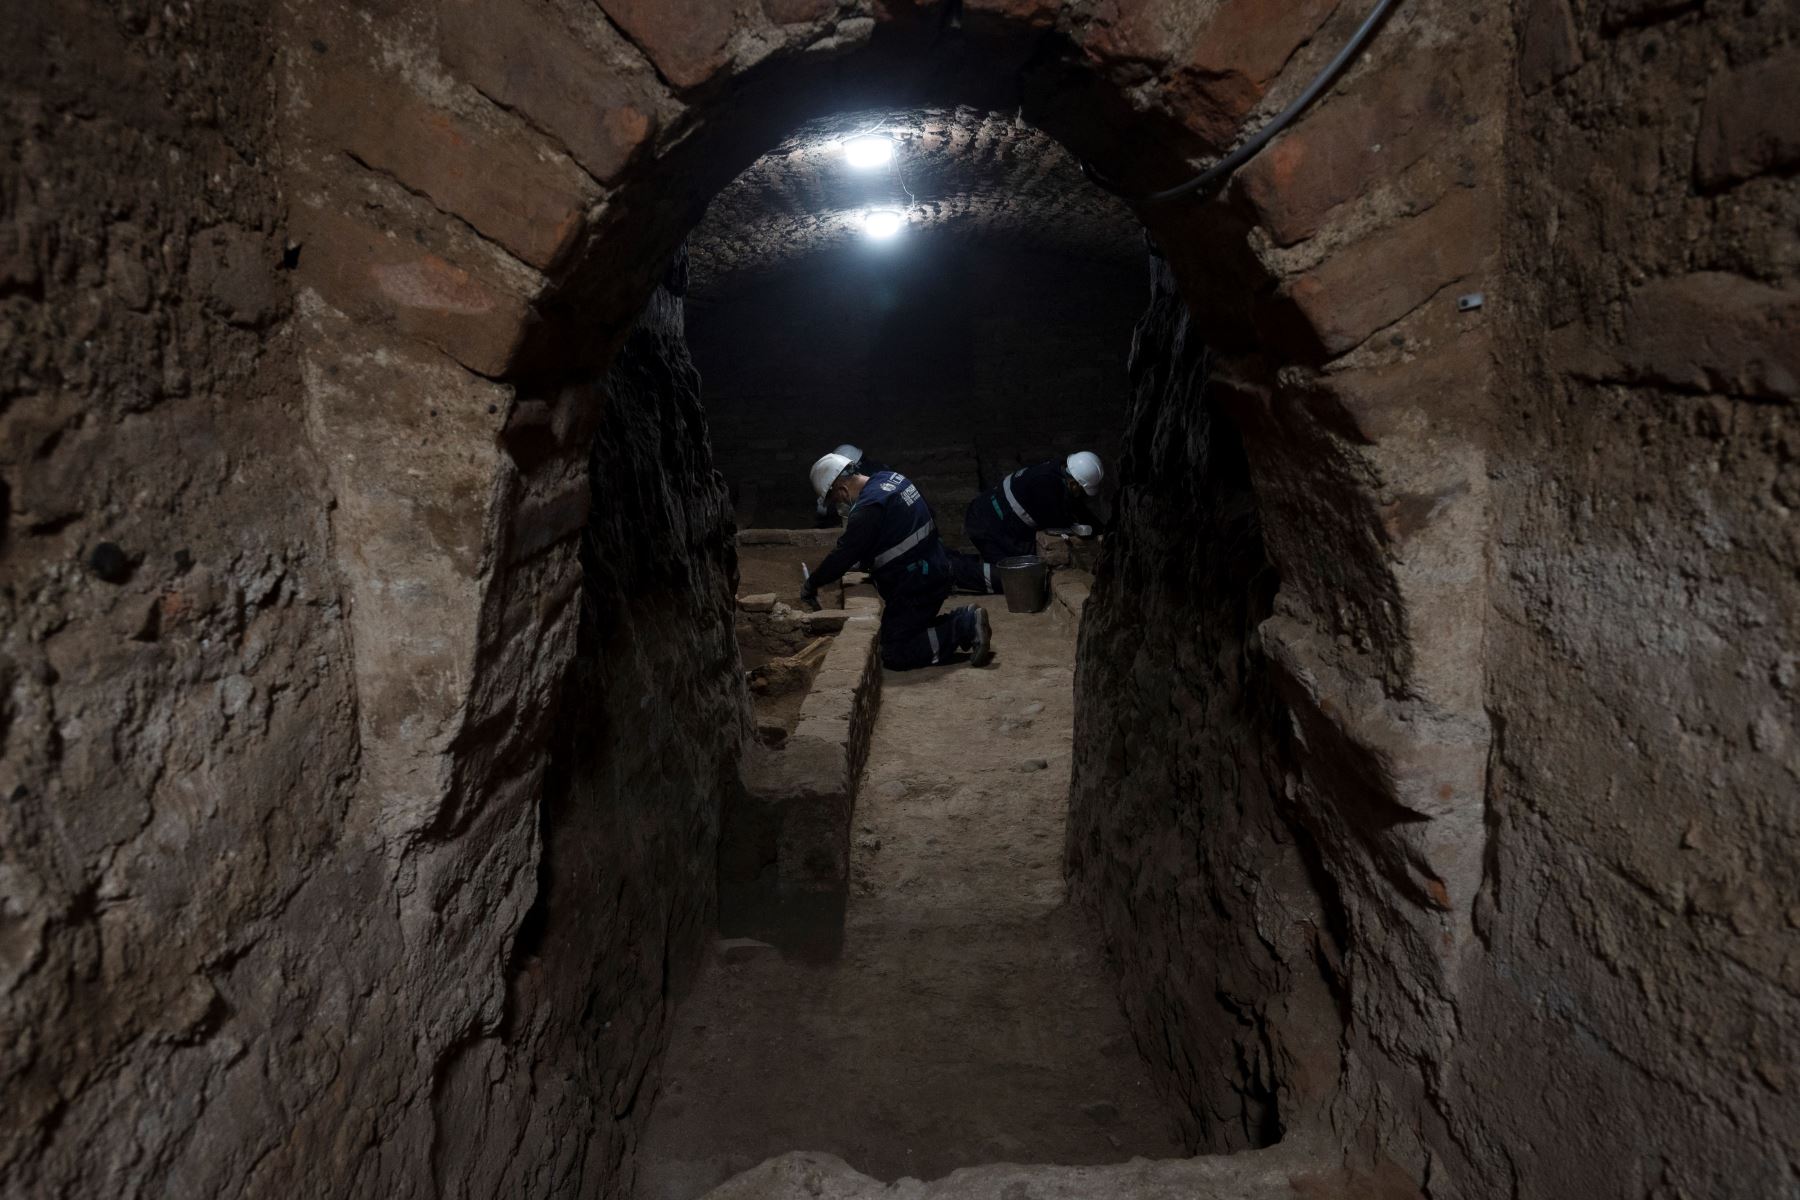 Arqueólogos peruanos descubren restos humanos en fosas comunes en catacumbas subterráneas, durante los trabajos de restauración en el Santuario de Nuestra Señora de la Soledad del siglo XVII.
Foto: AFP